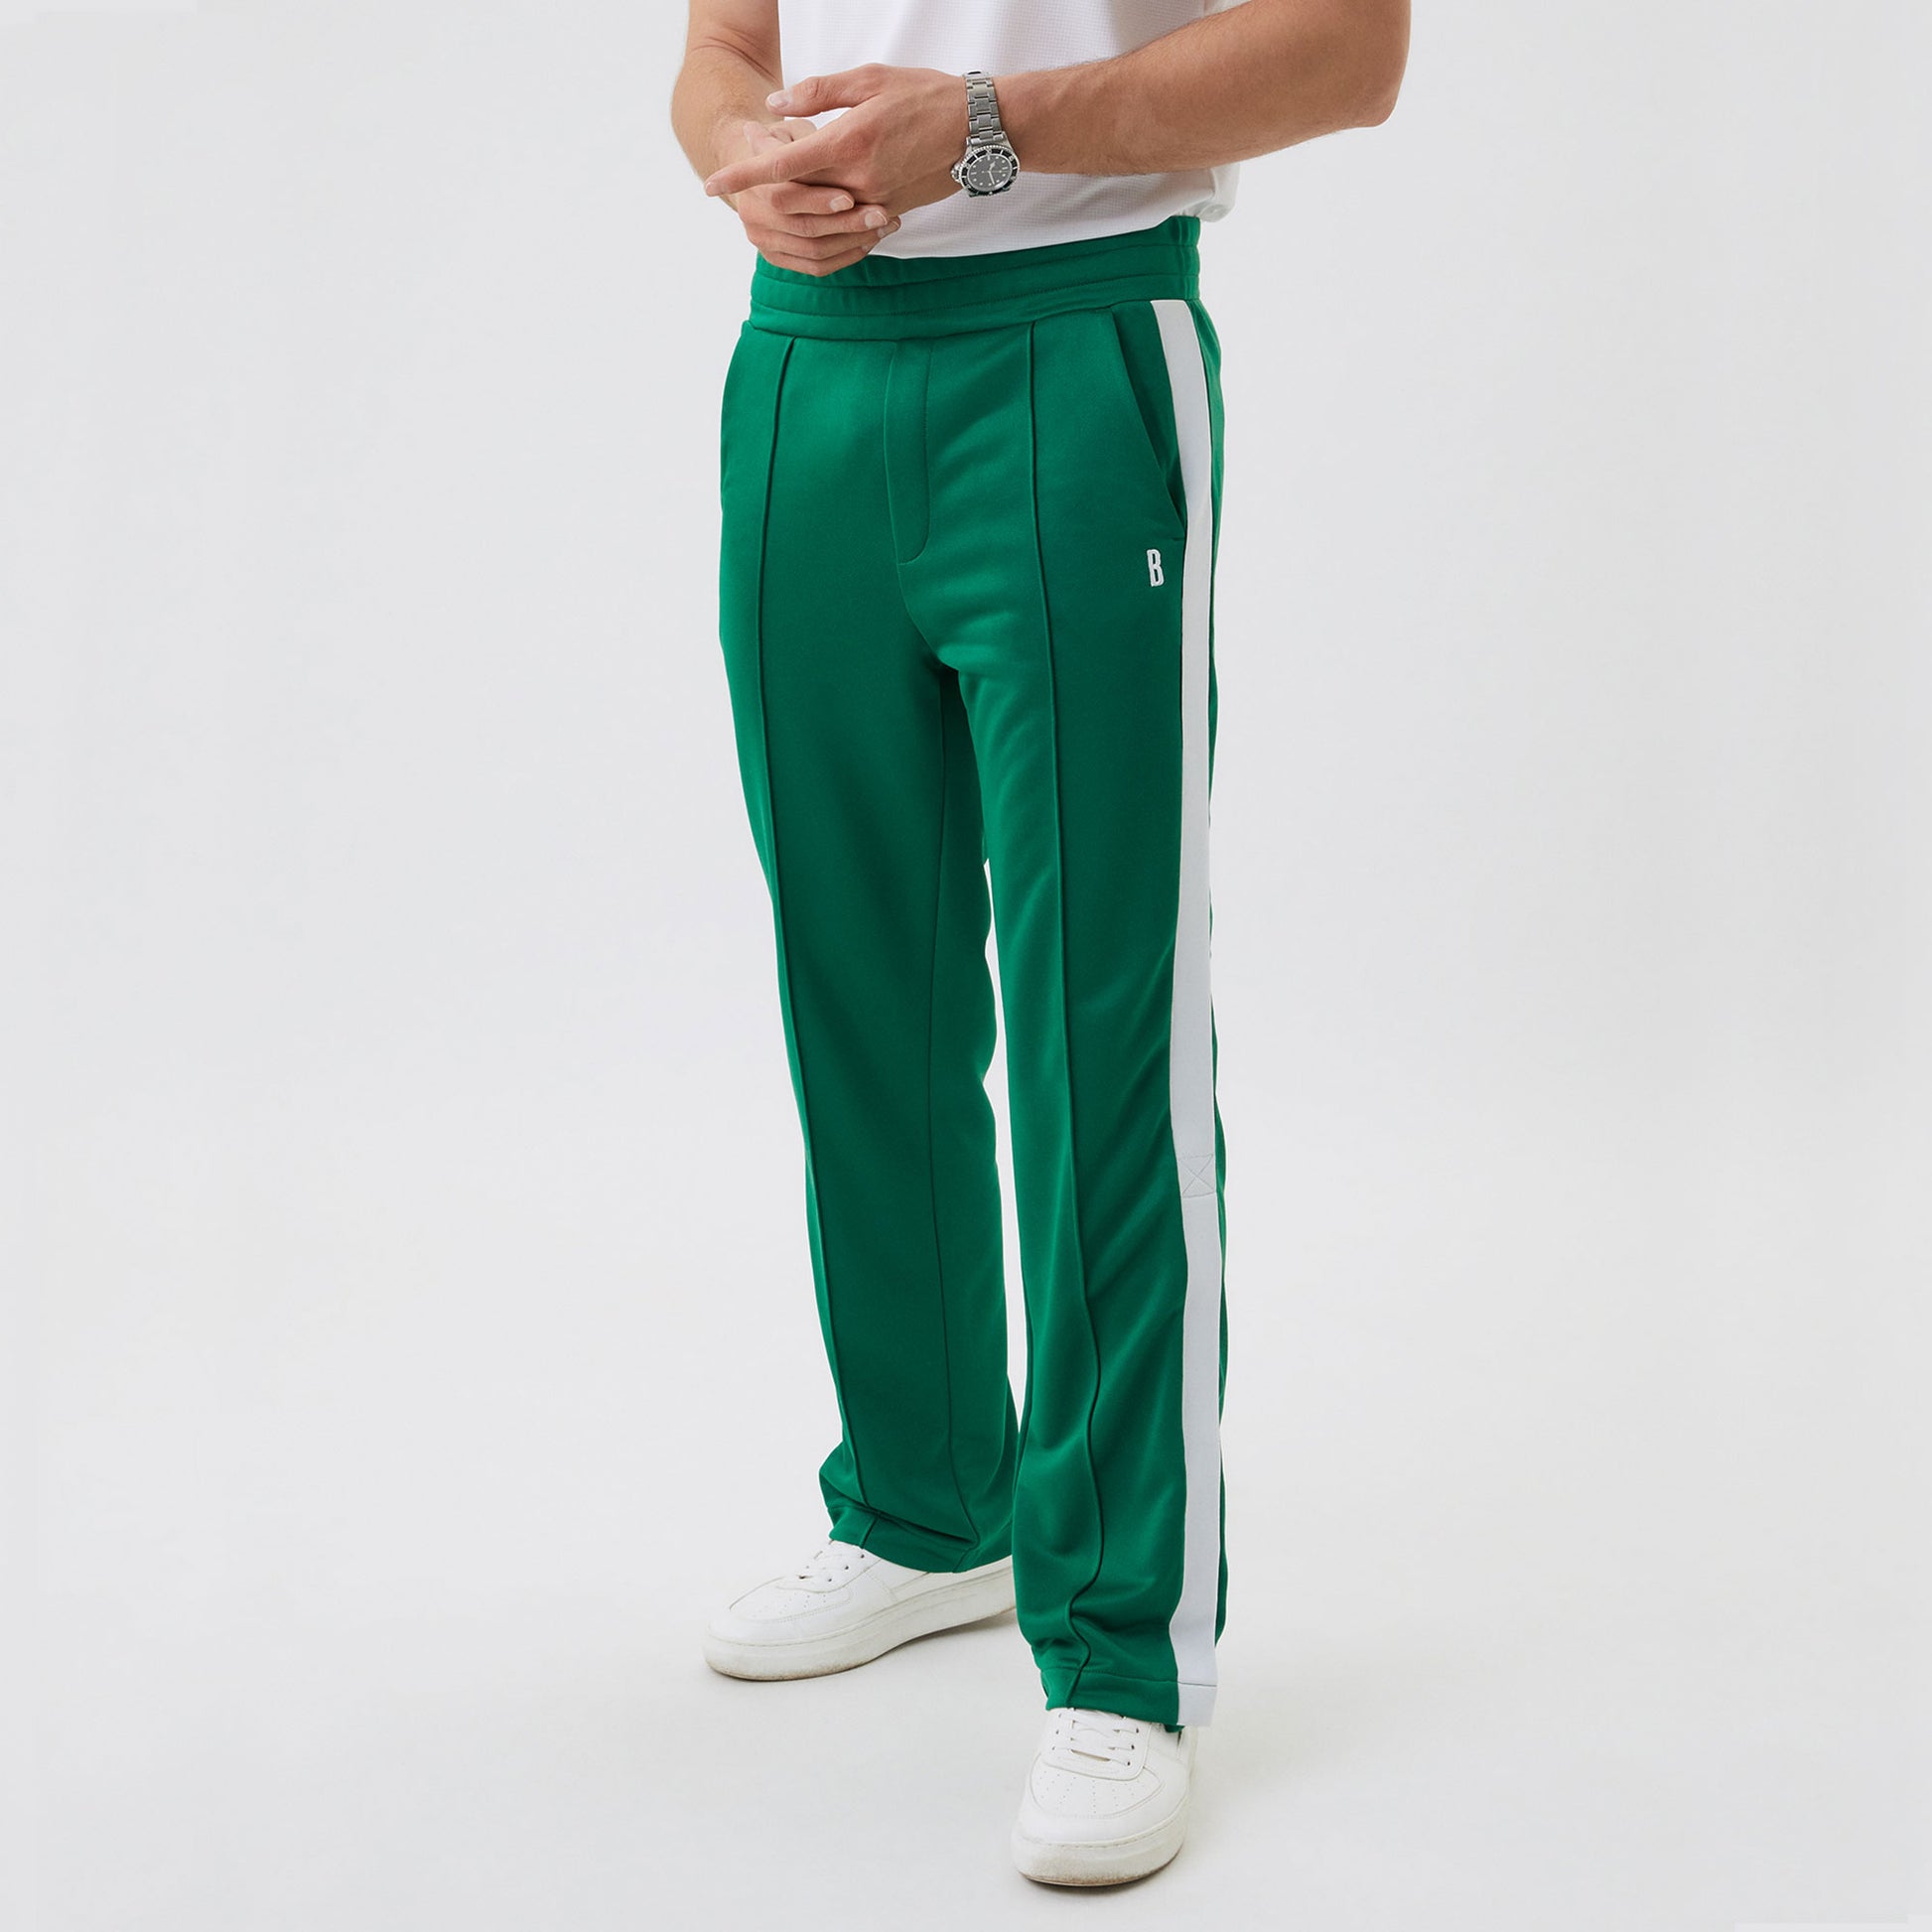 Björn Borg Ace Men's Tennis Pants Green (1)